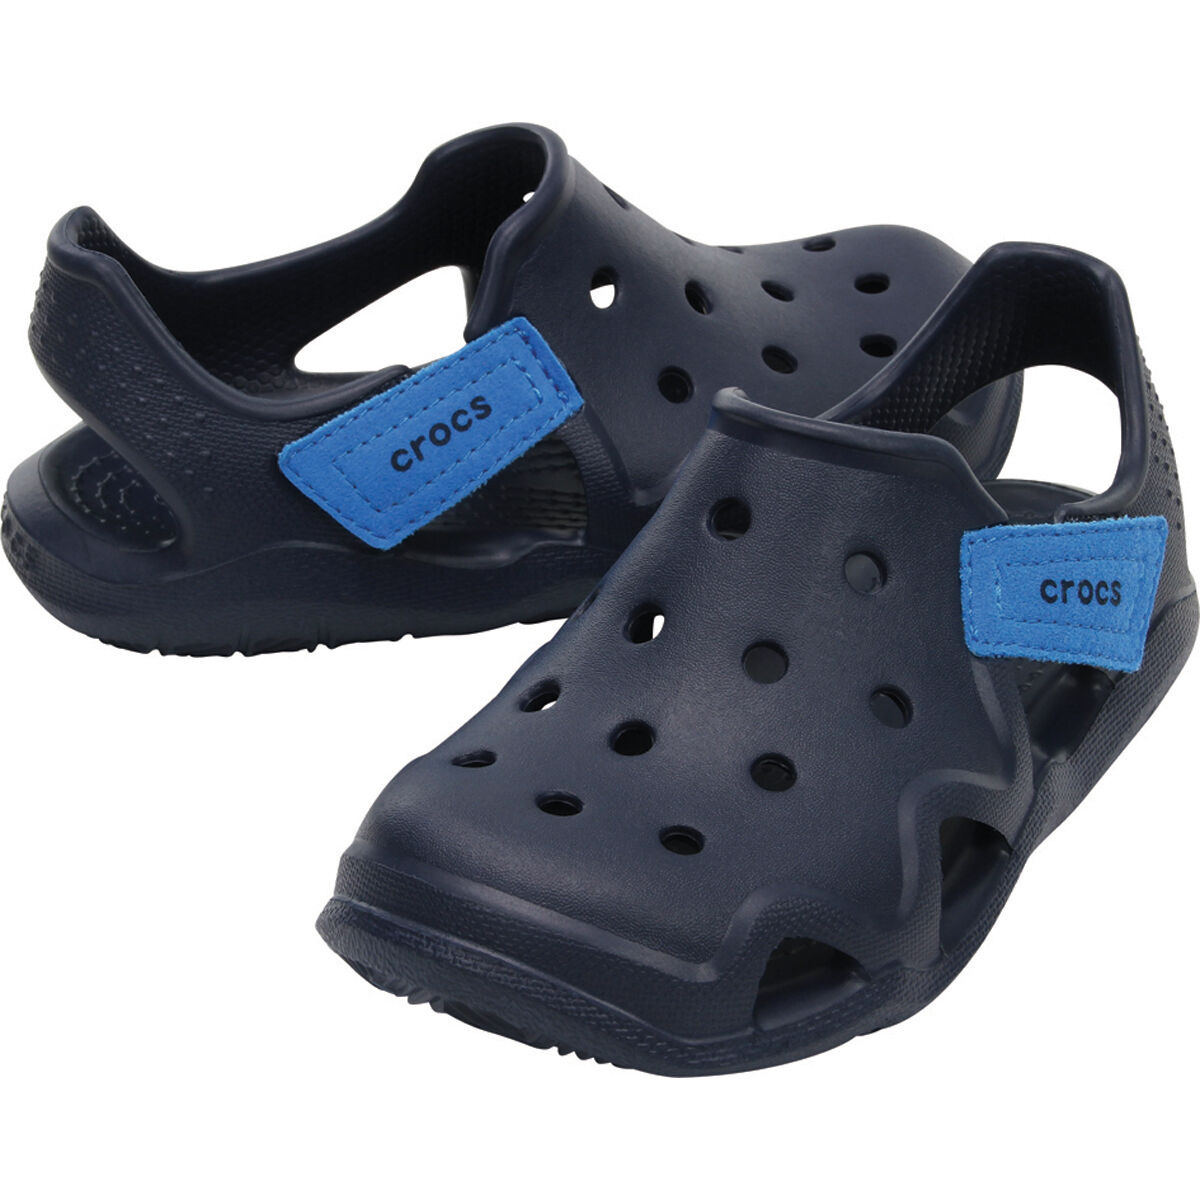 crocs c9 size chart